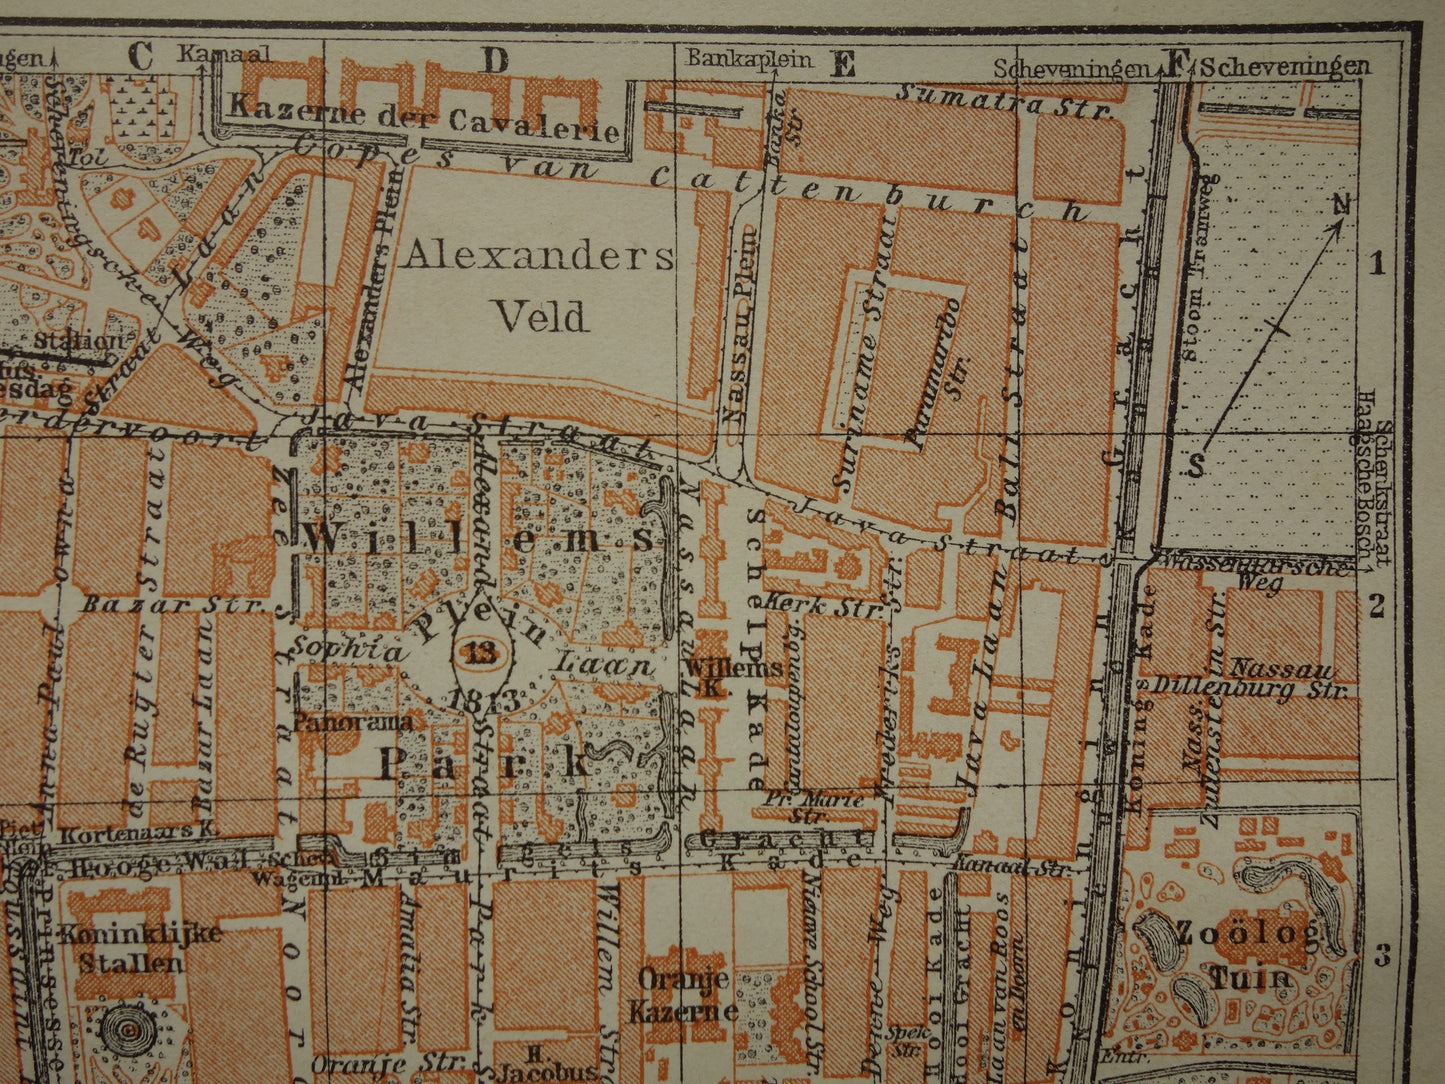 DEN HAAG oude kaart van 's Gravenhage uit 1910 kleine originele antieke plattegrond vintage landkaart